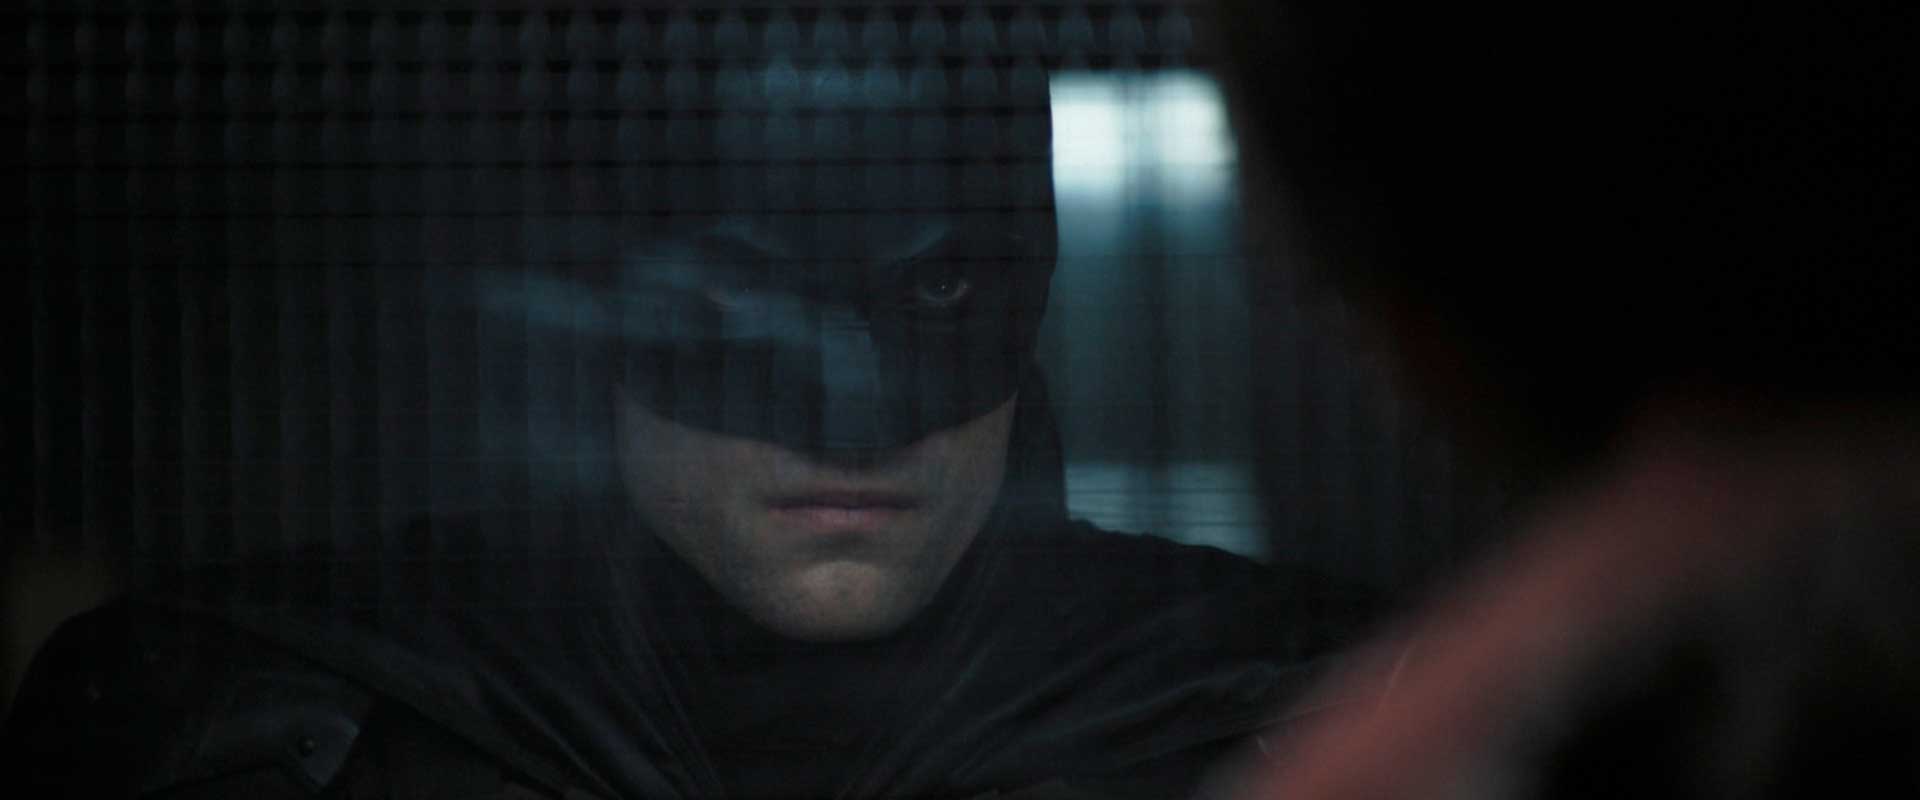 بروس وین در برابر زندانی در فیلم The Batman، محصول سال ۲۰۲۲ میلادی